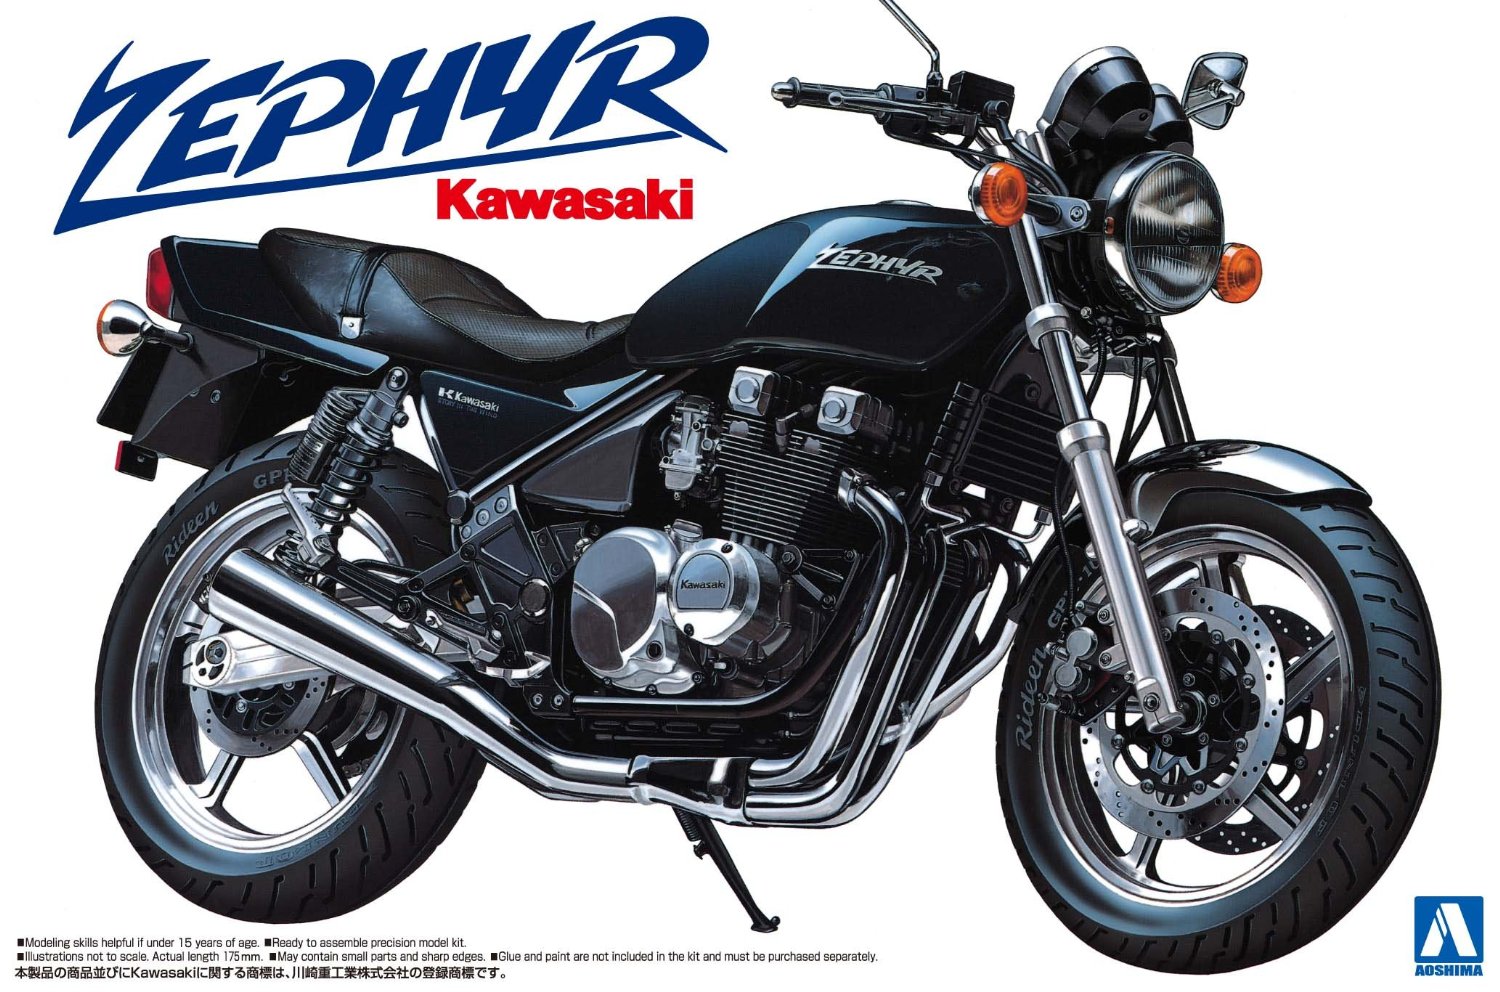 1/12 Motorcycle No.01 Kawasaki ZEPHYR